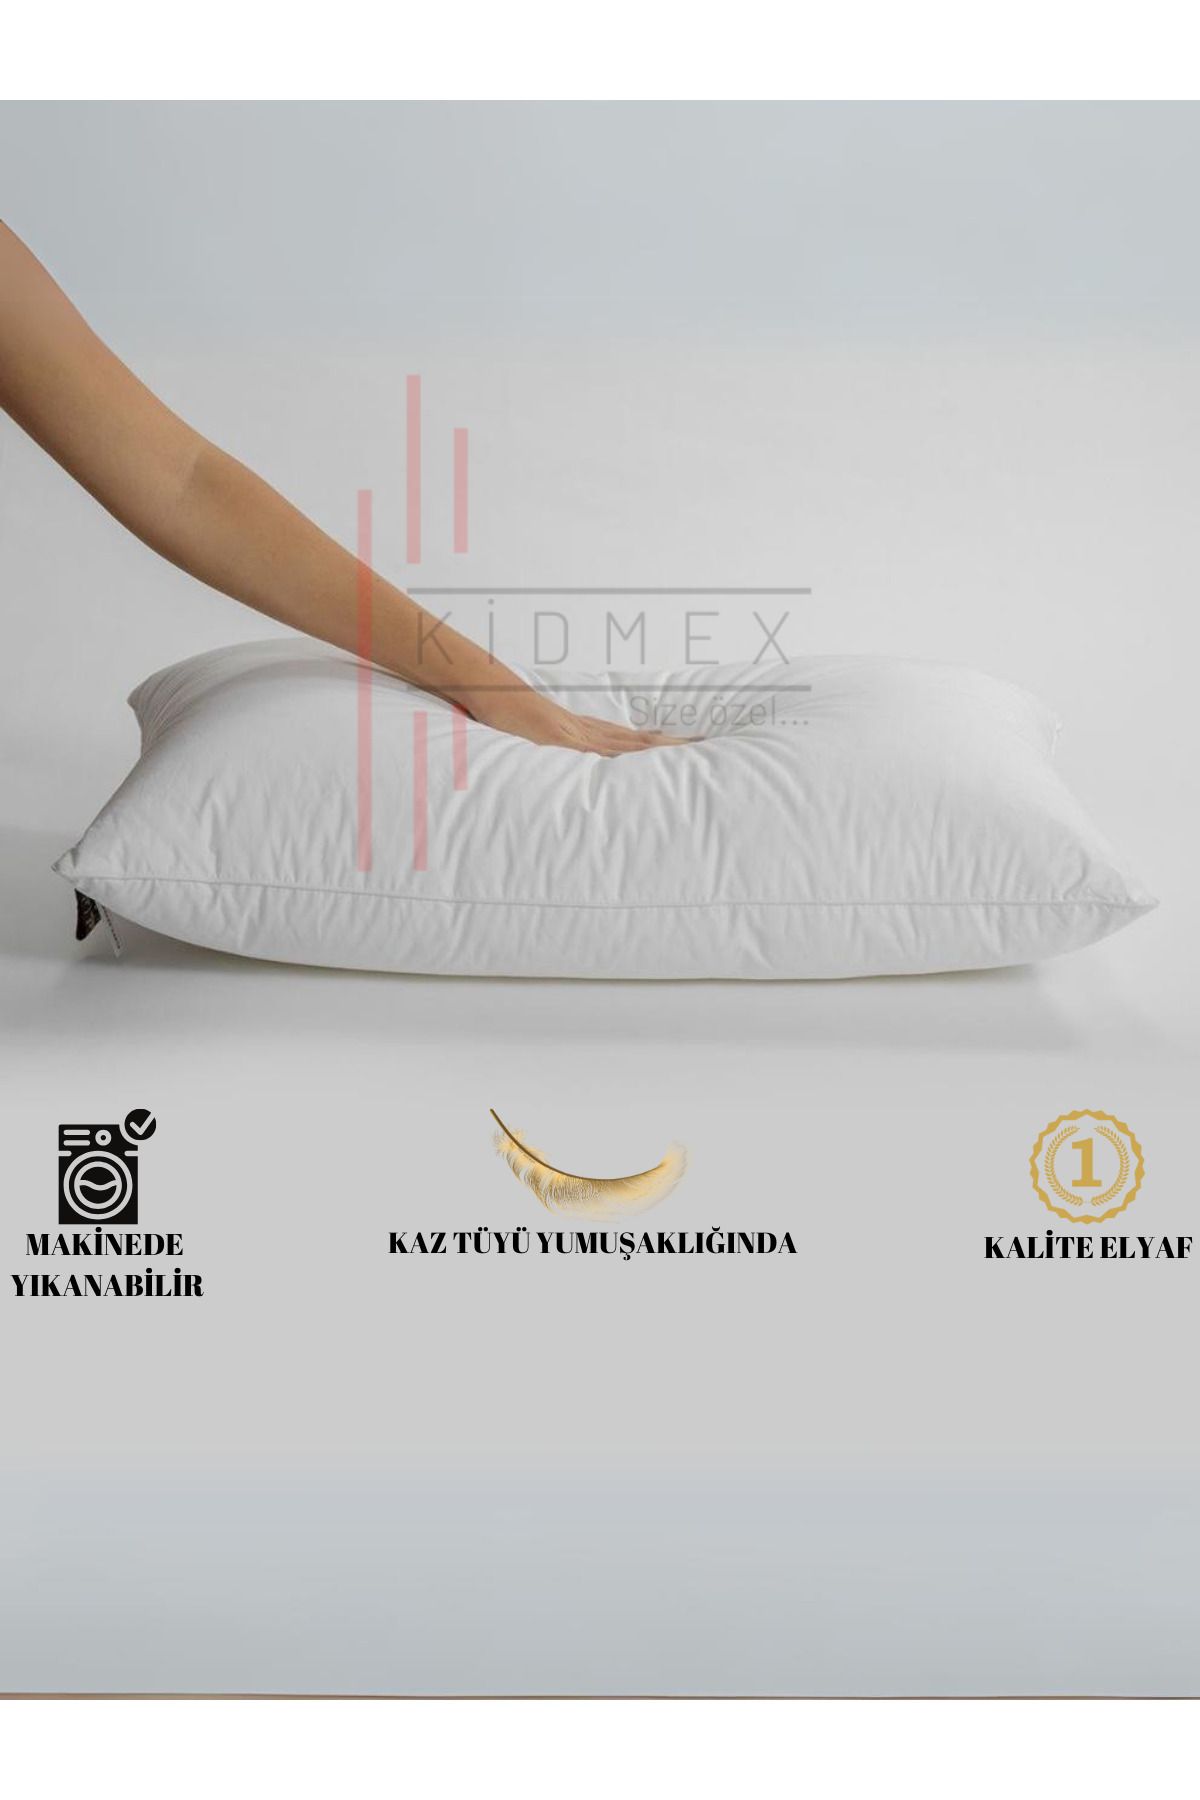 Kidmex Rulo Pack Premium Yüksek Yastık (1 ADET 800GR)